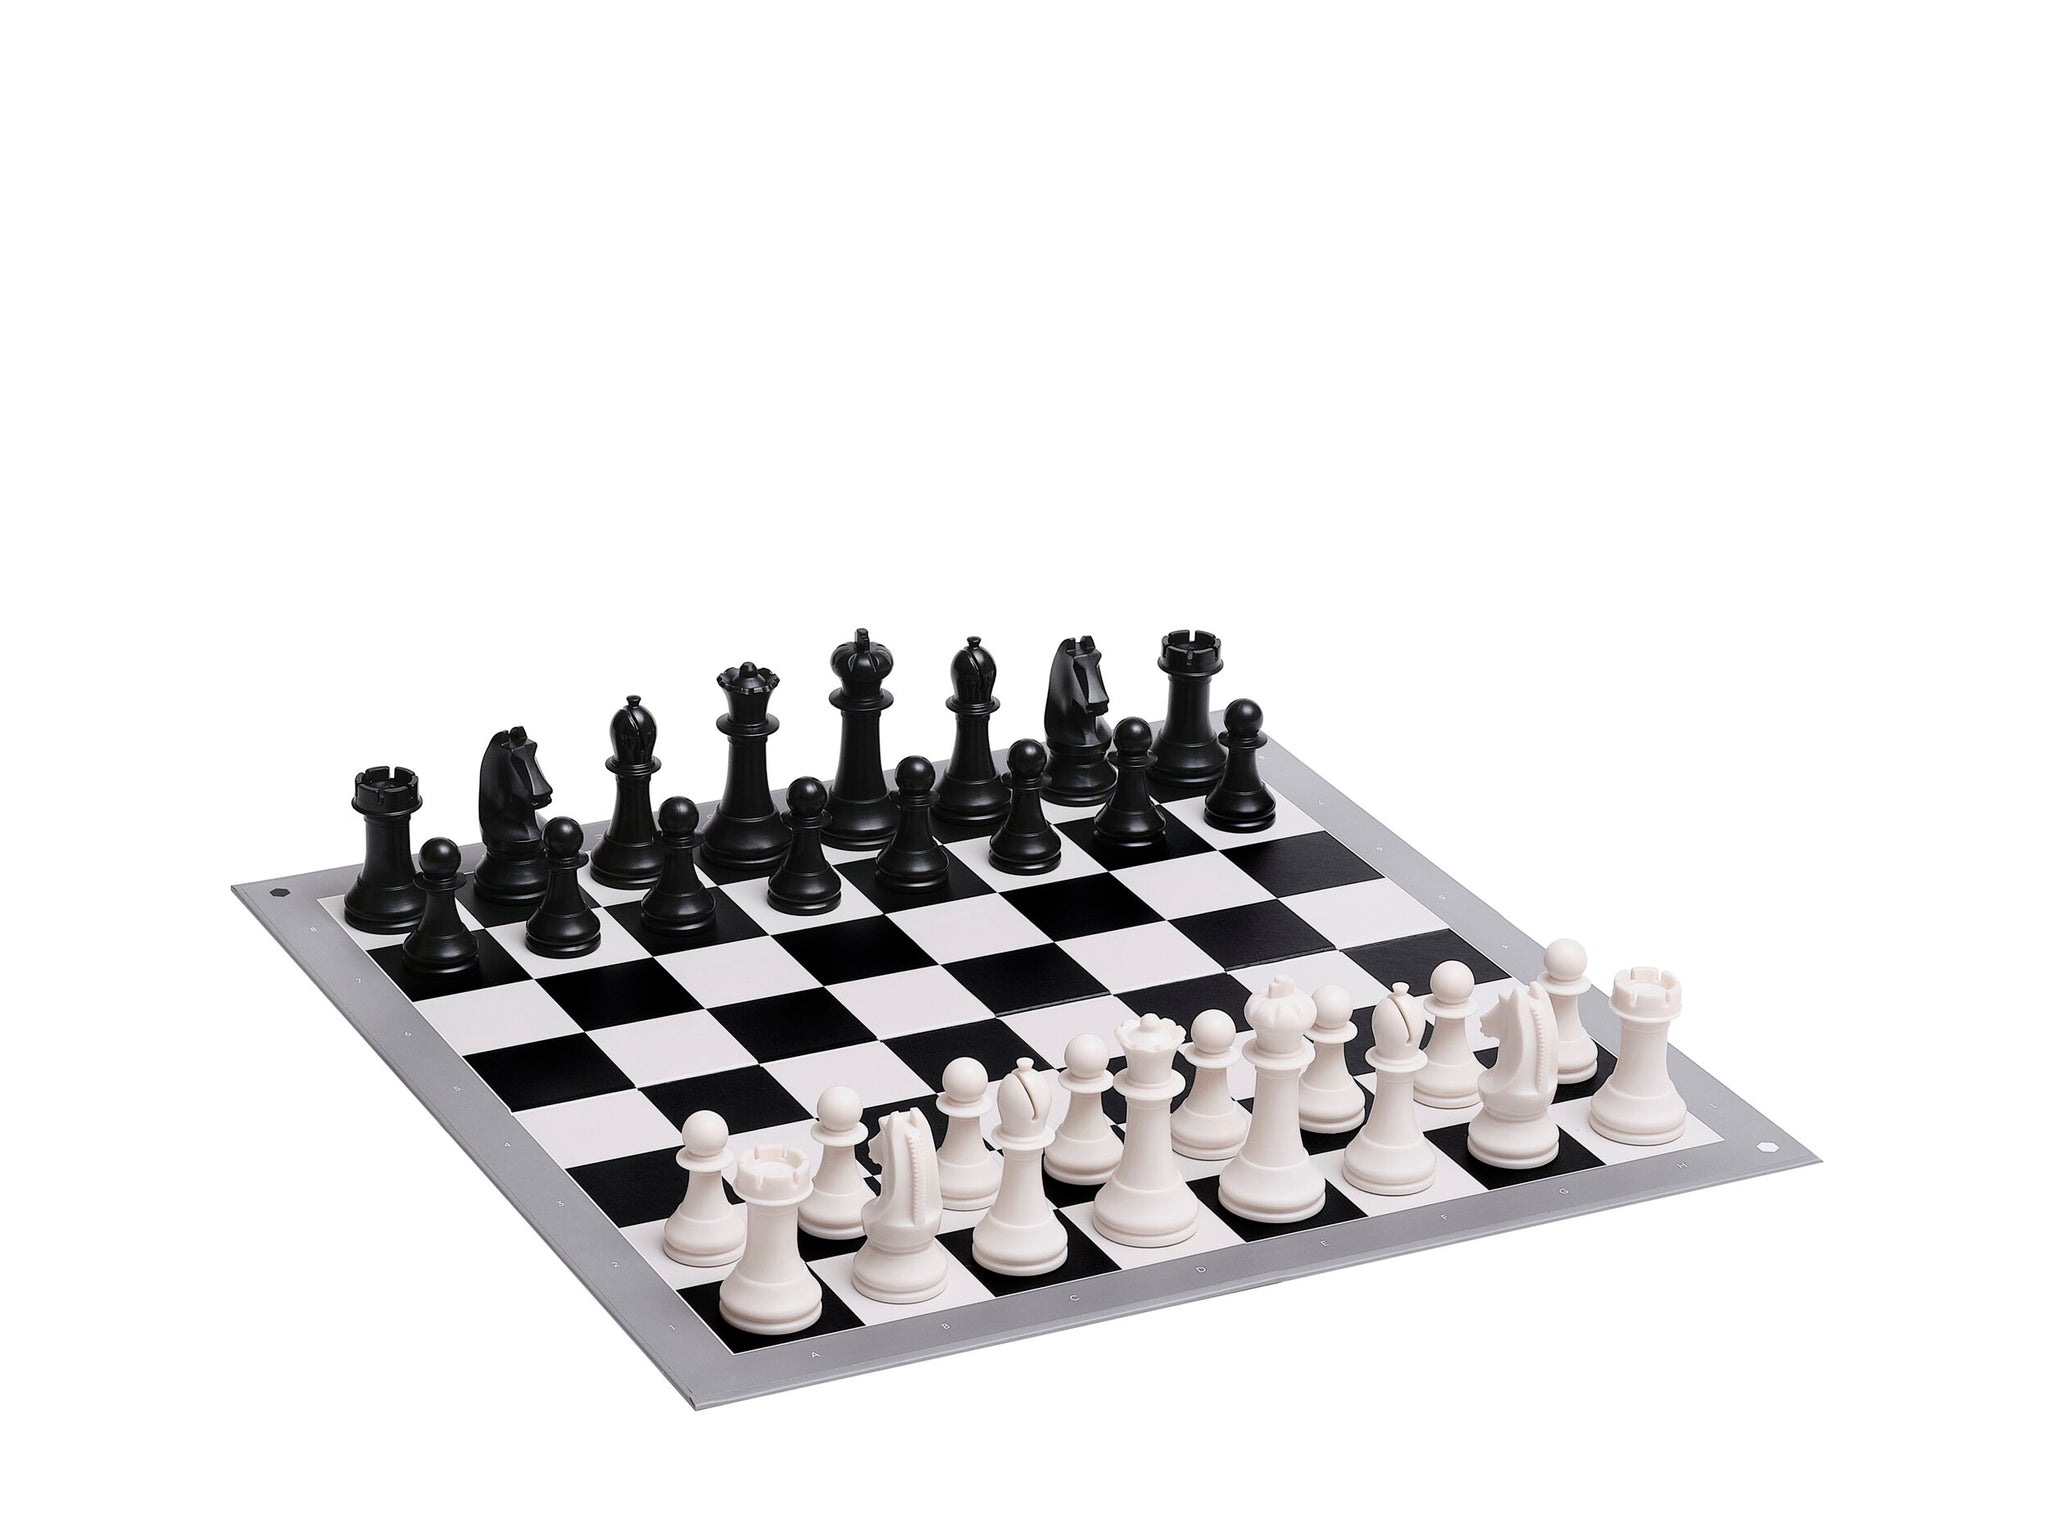 Club Chess Set - Black